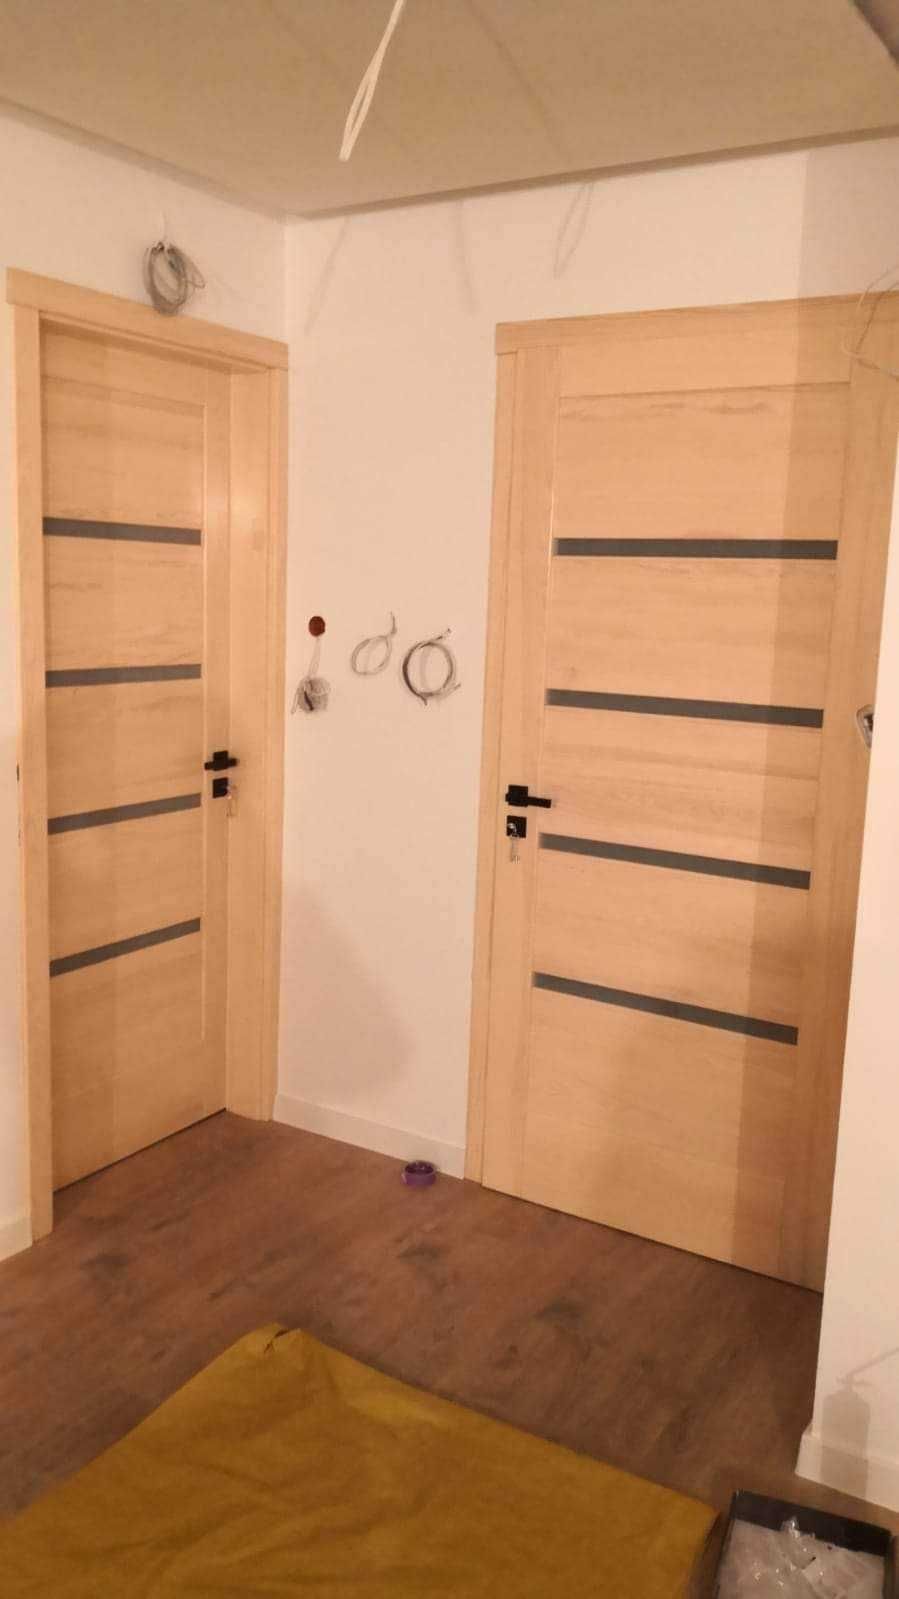 drzwi drewniane wewnętrzne